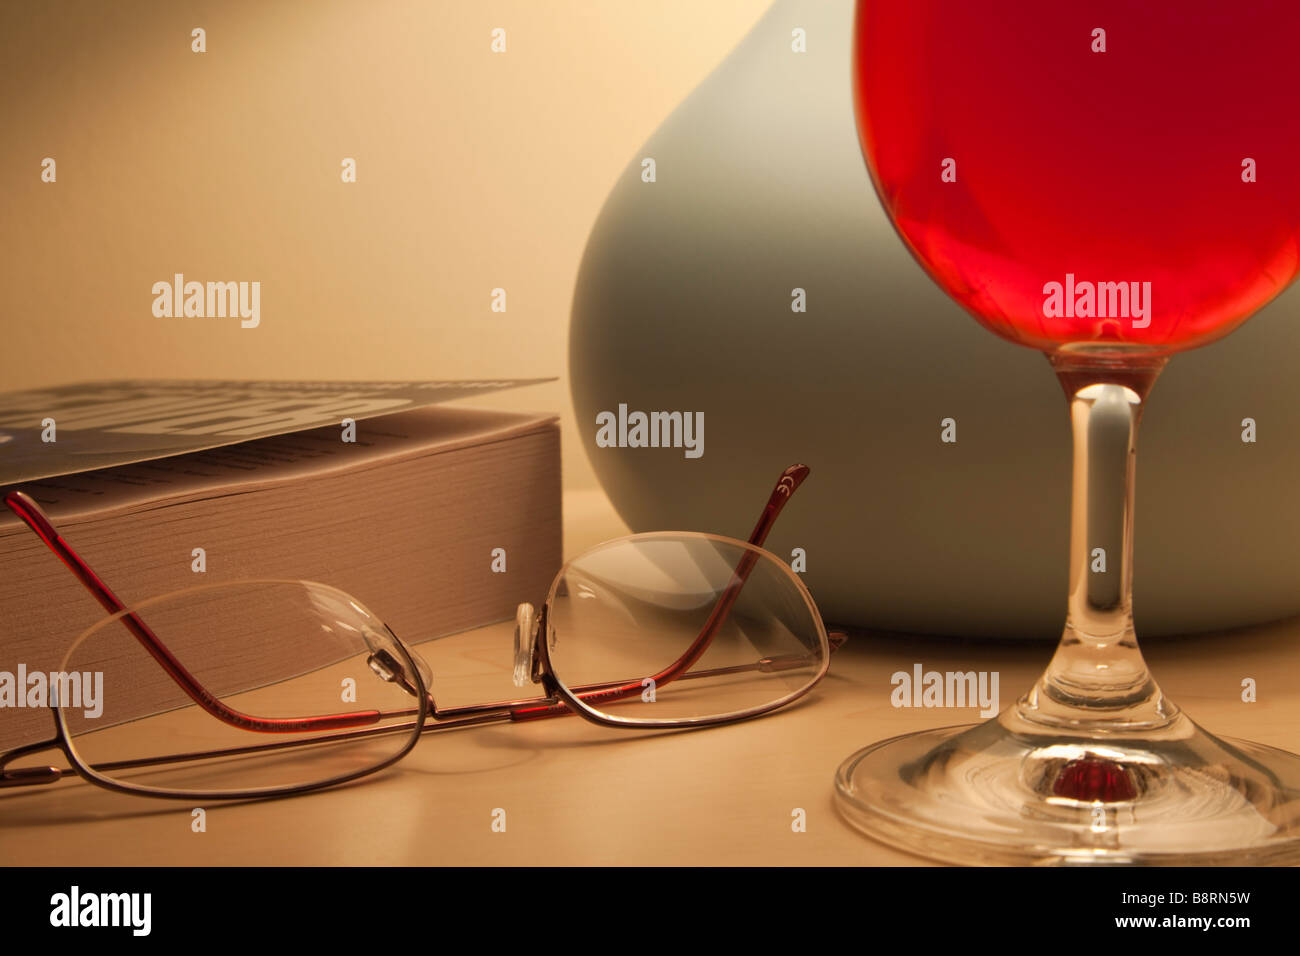 Accueillant tous les jours hygge scène avec un verre de vin rouge par allumé la lampe de chevet Livre de poche et lunettes de lecture à l'heure du coucher. Angleterre Royaume-uni Grande-Bretagne Banque D'Images